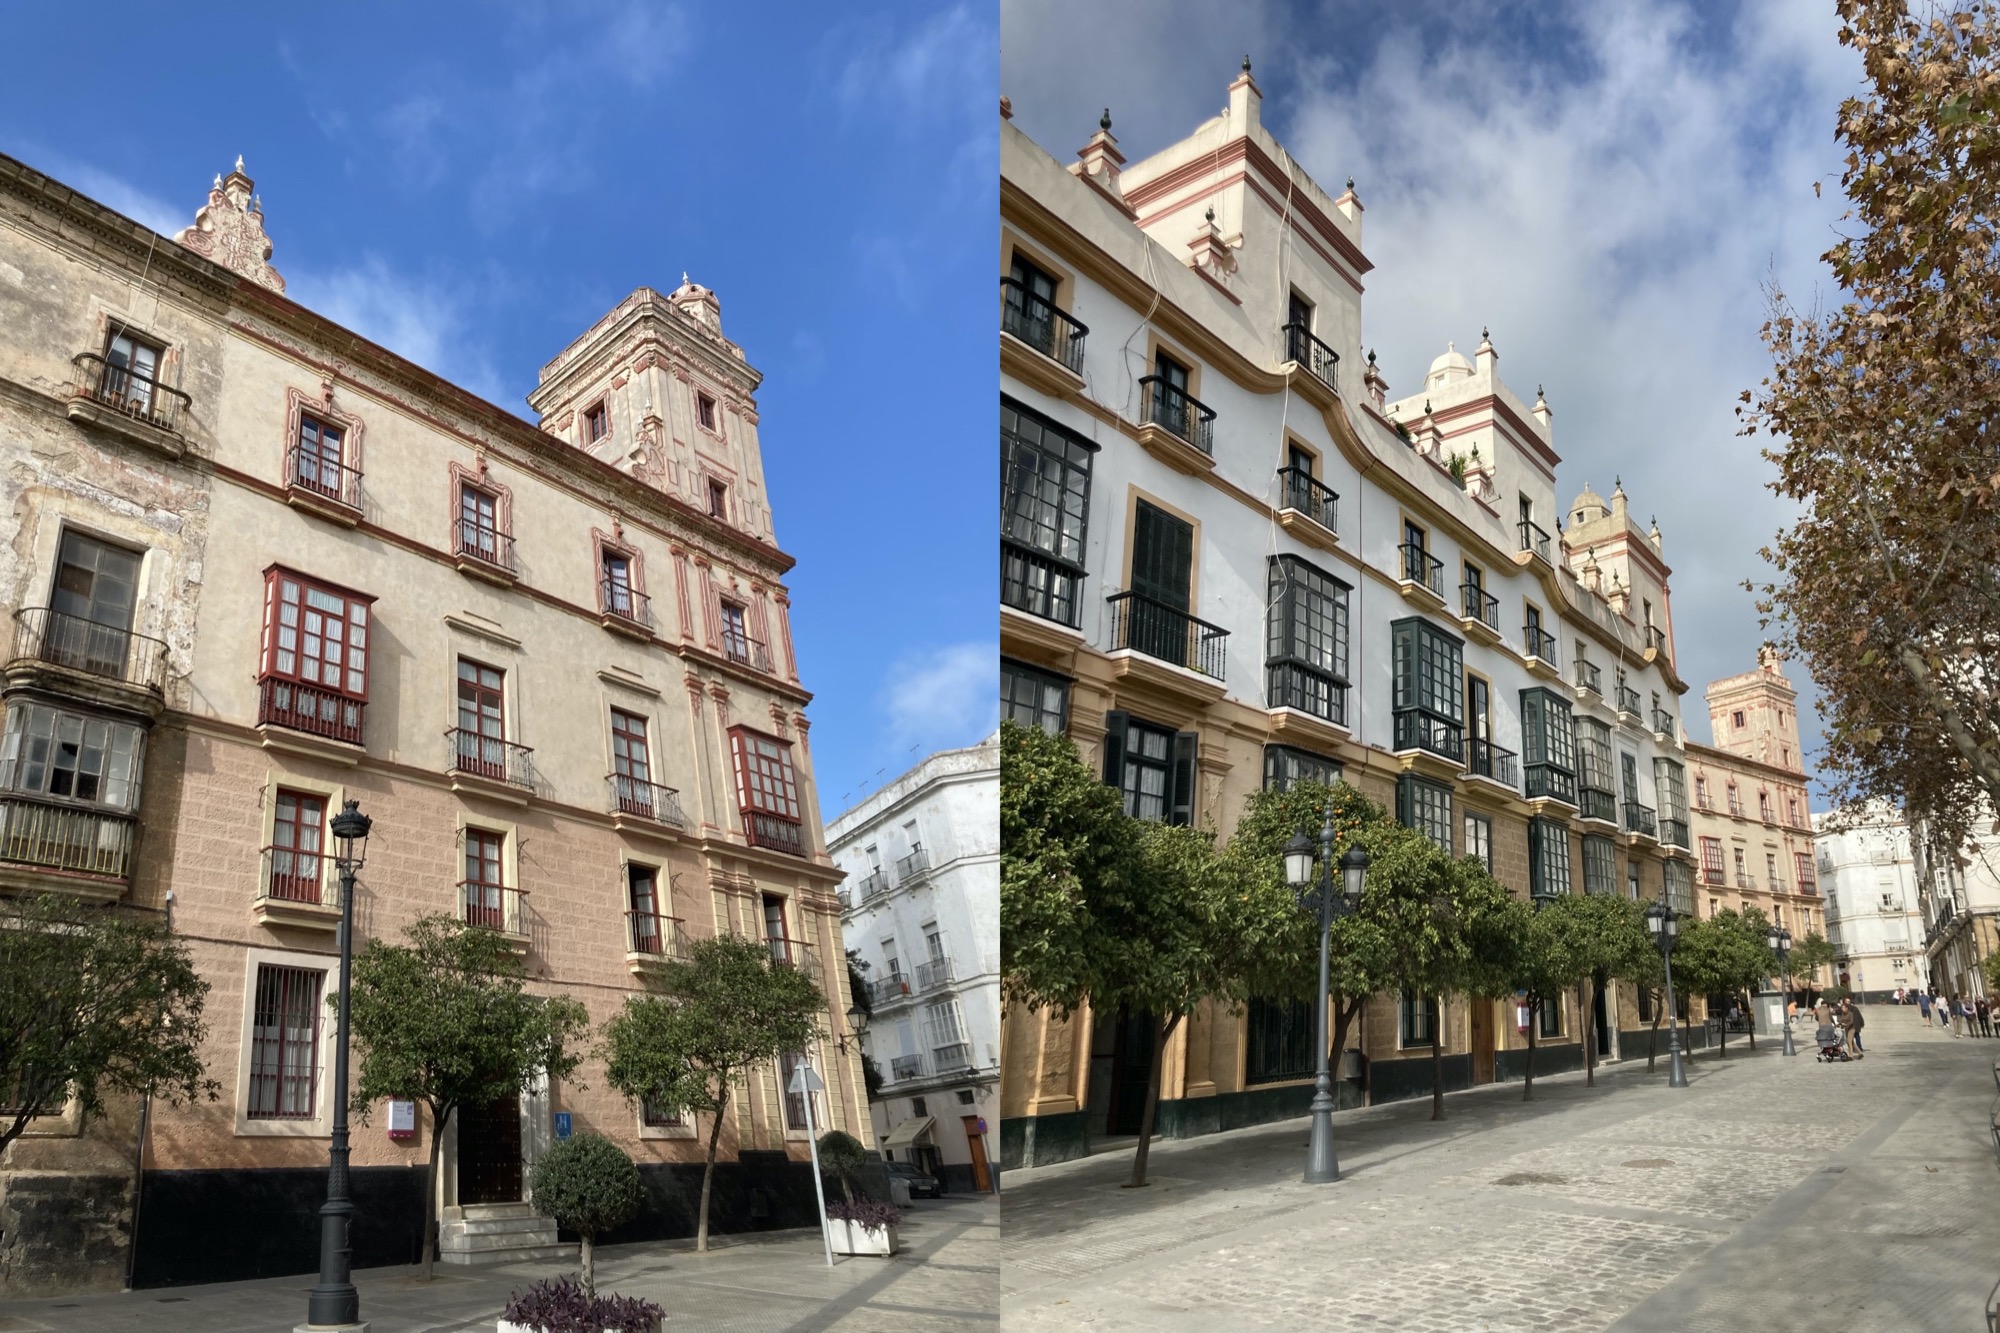 historische Häuser mit verzierten Balkonen, Türmen und Ziergiebeln